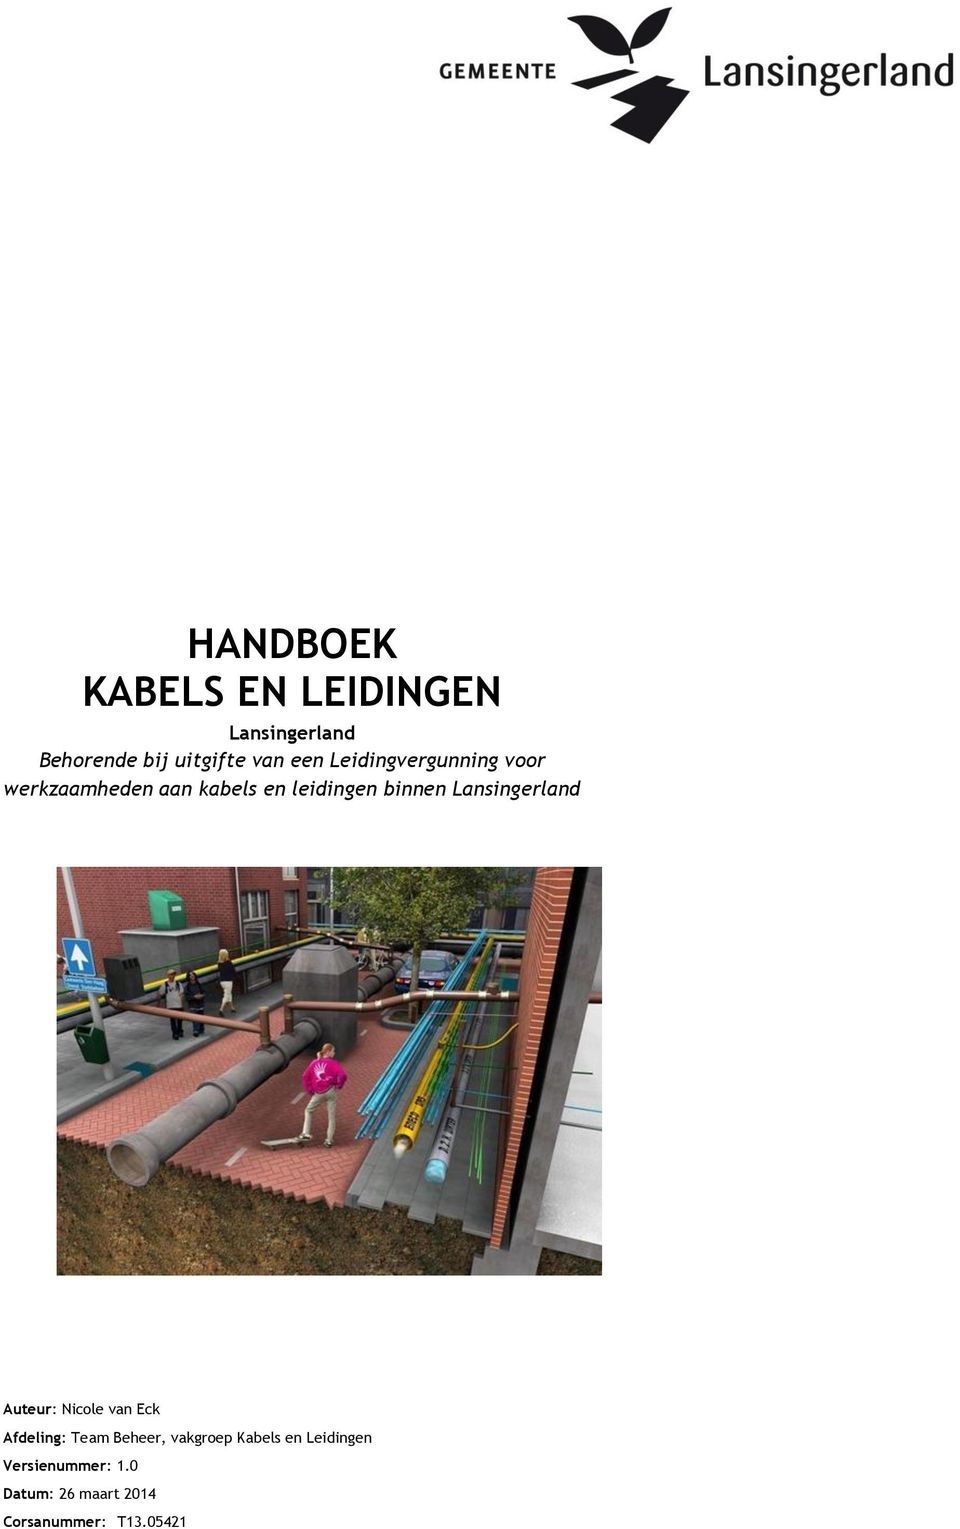 Lansingerland Auteur: Nicole van Eck Afdeling: Team Beheer, vakgroep